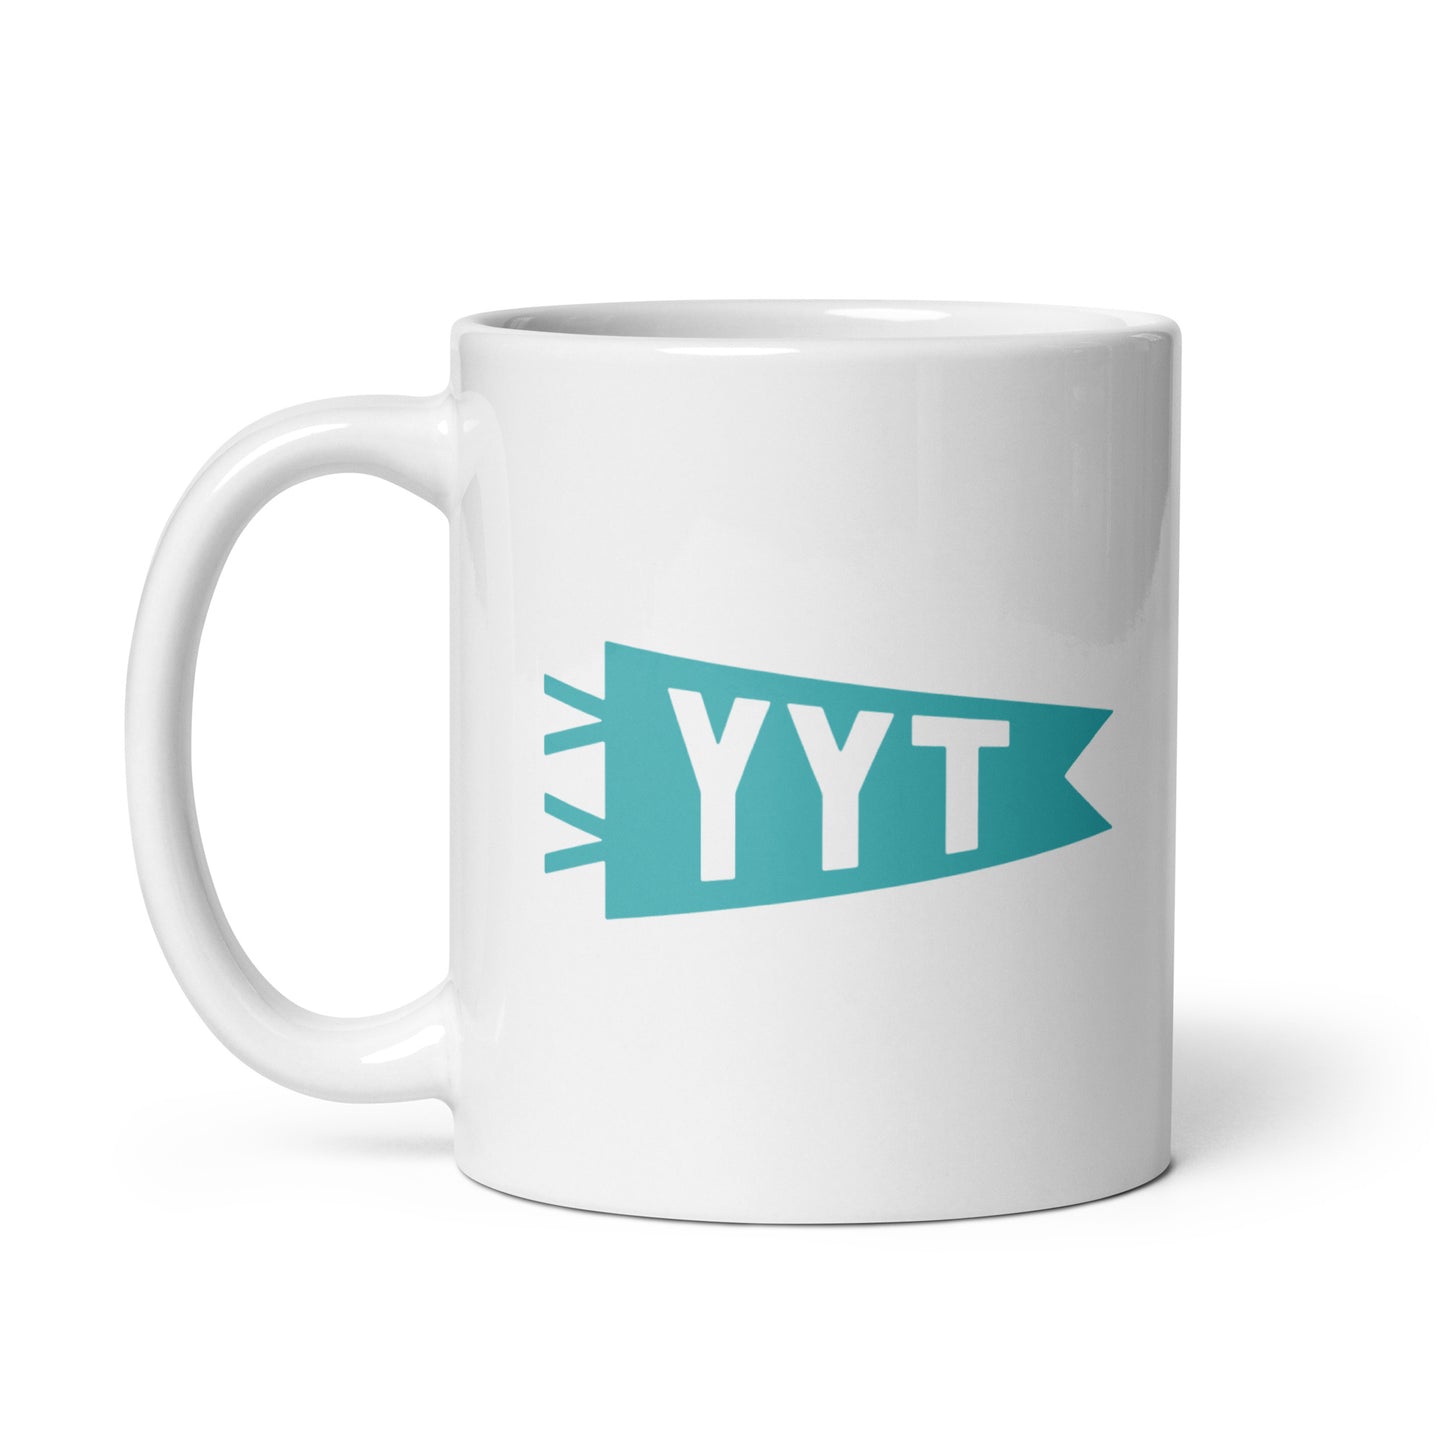 Cool Travel Gift Coffee Mug - Viking Blue • YYT St. John's • YHM Designs - Image 02